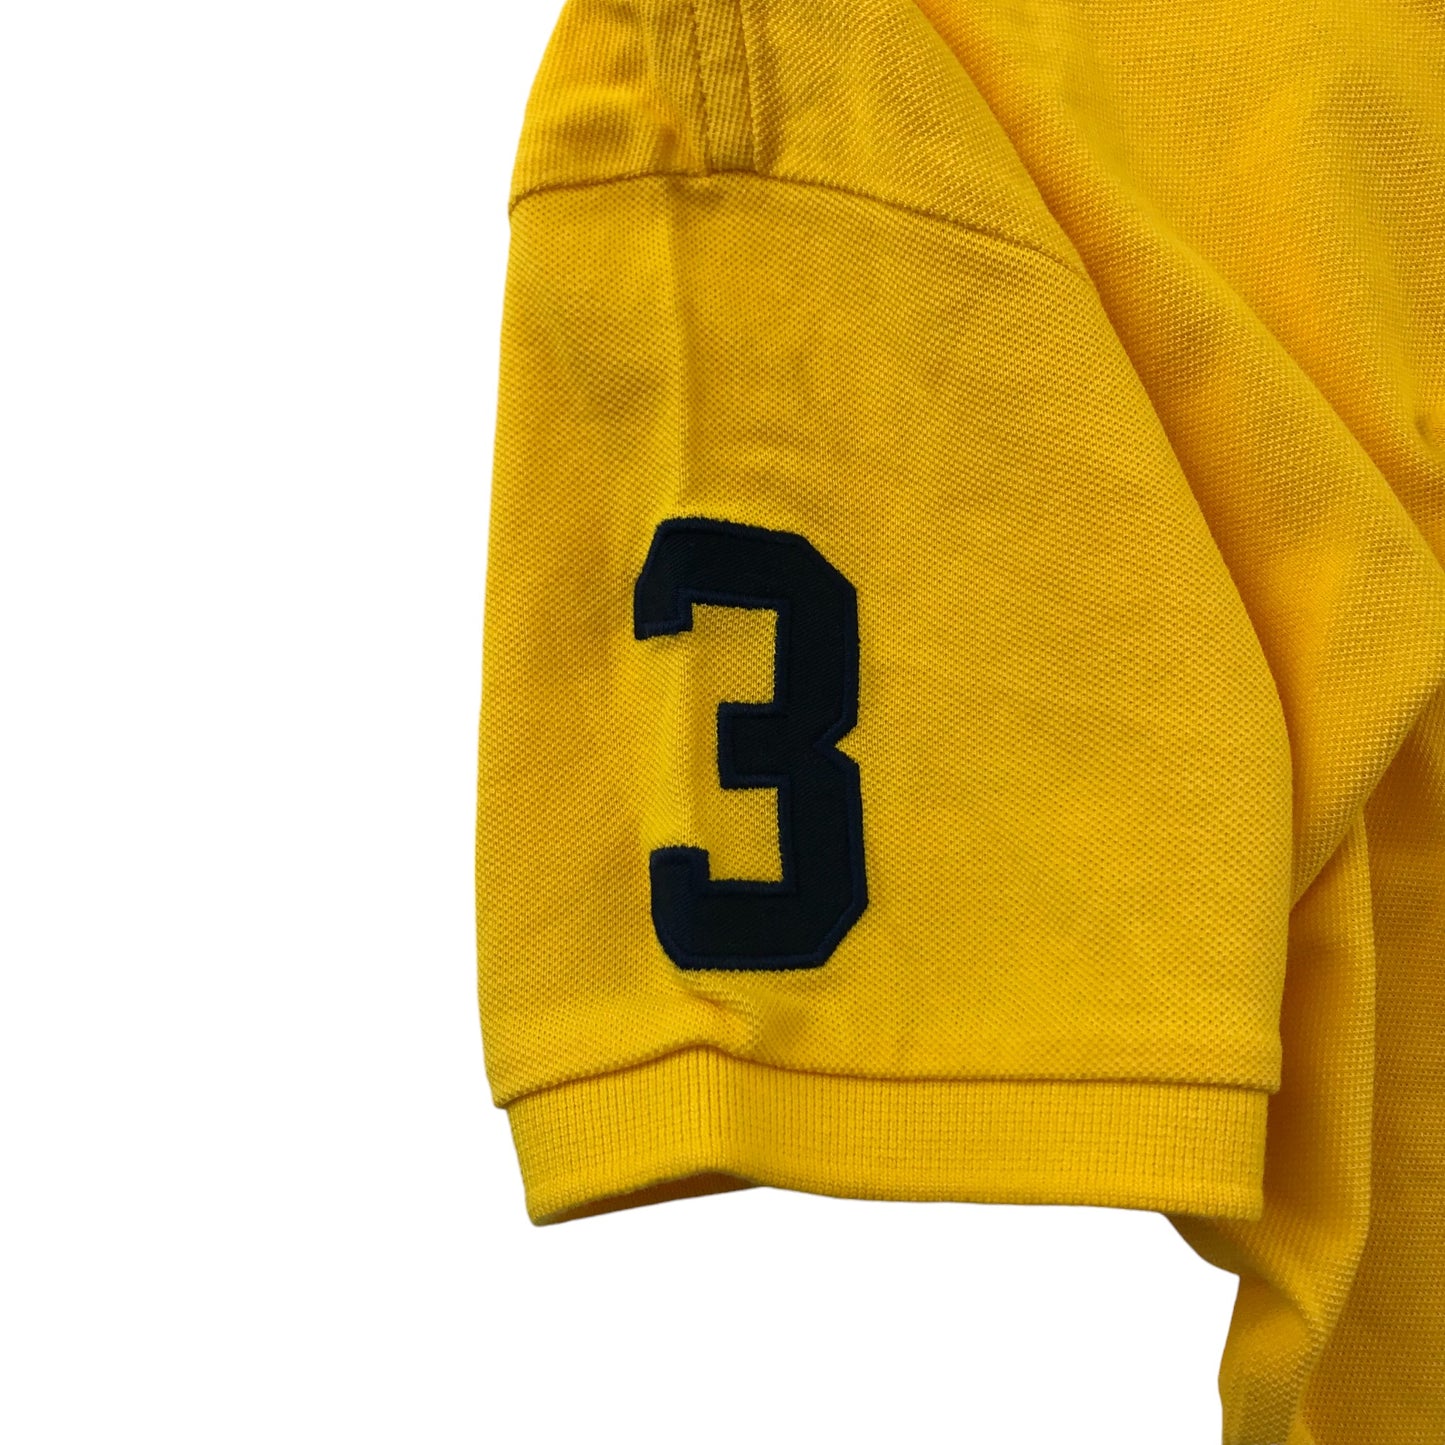 US Polo Assn Polo Shirt Age 14-16 Yellow Short Sleeve Cotton